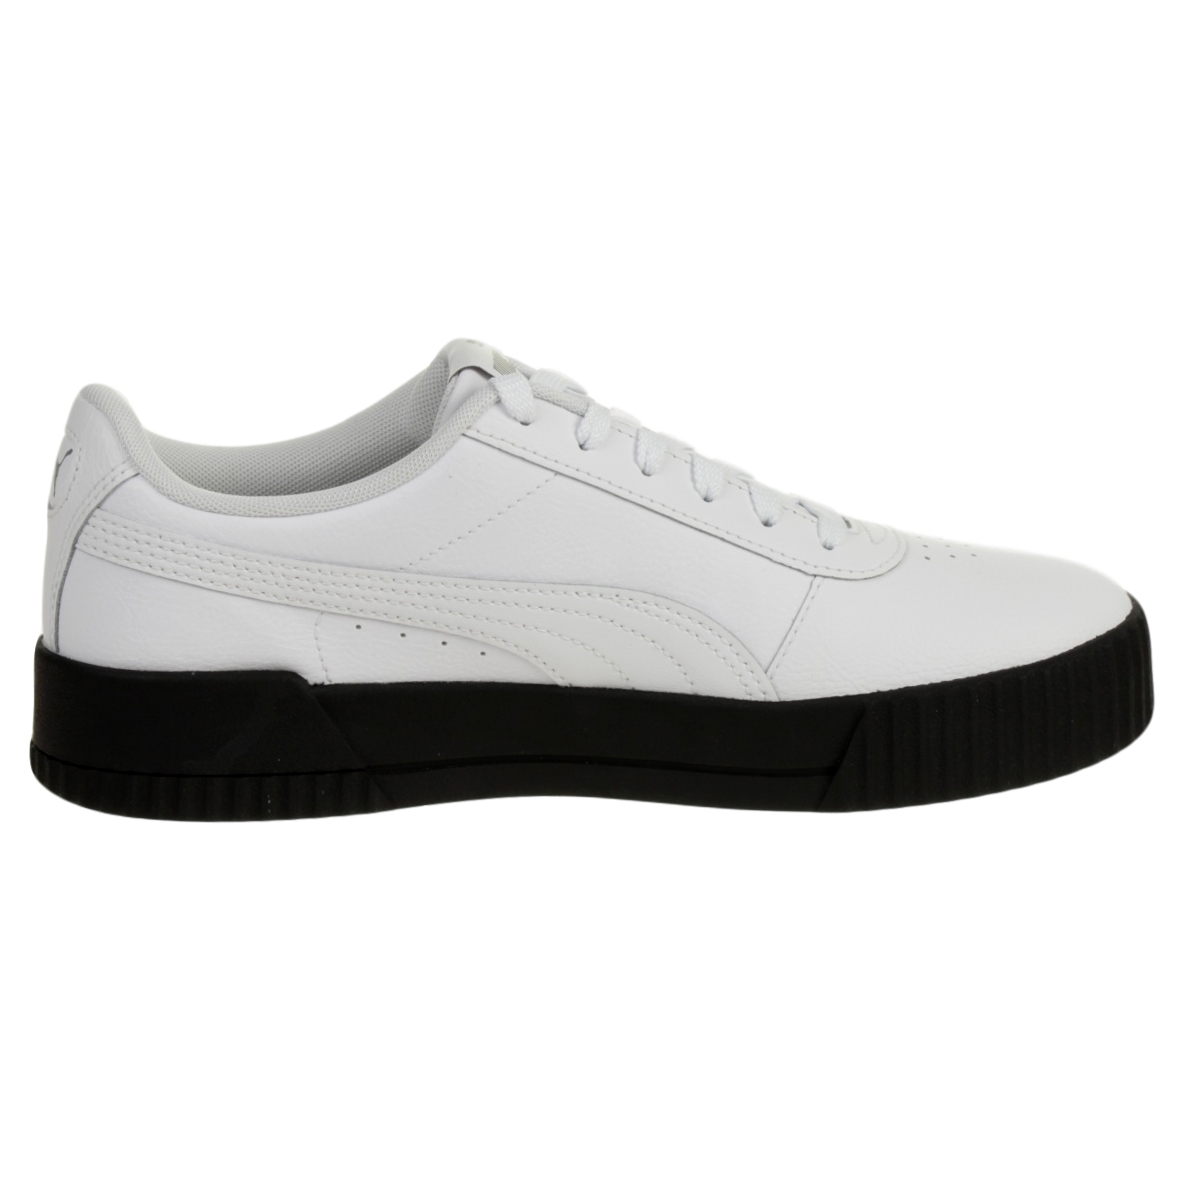 Puma Carina L Damen Sneaker Leder Schuhe 370325 17 Weiß